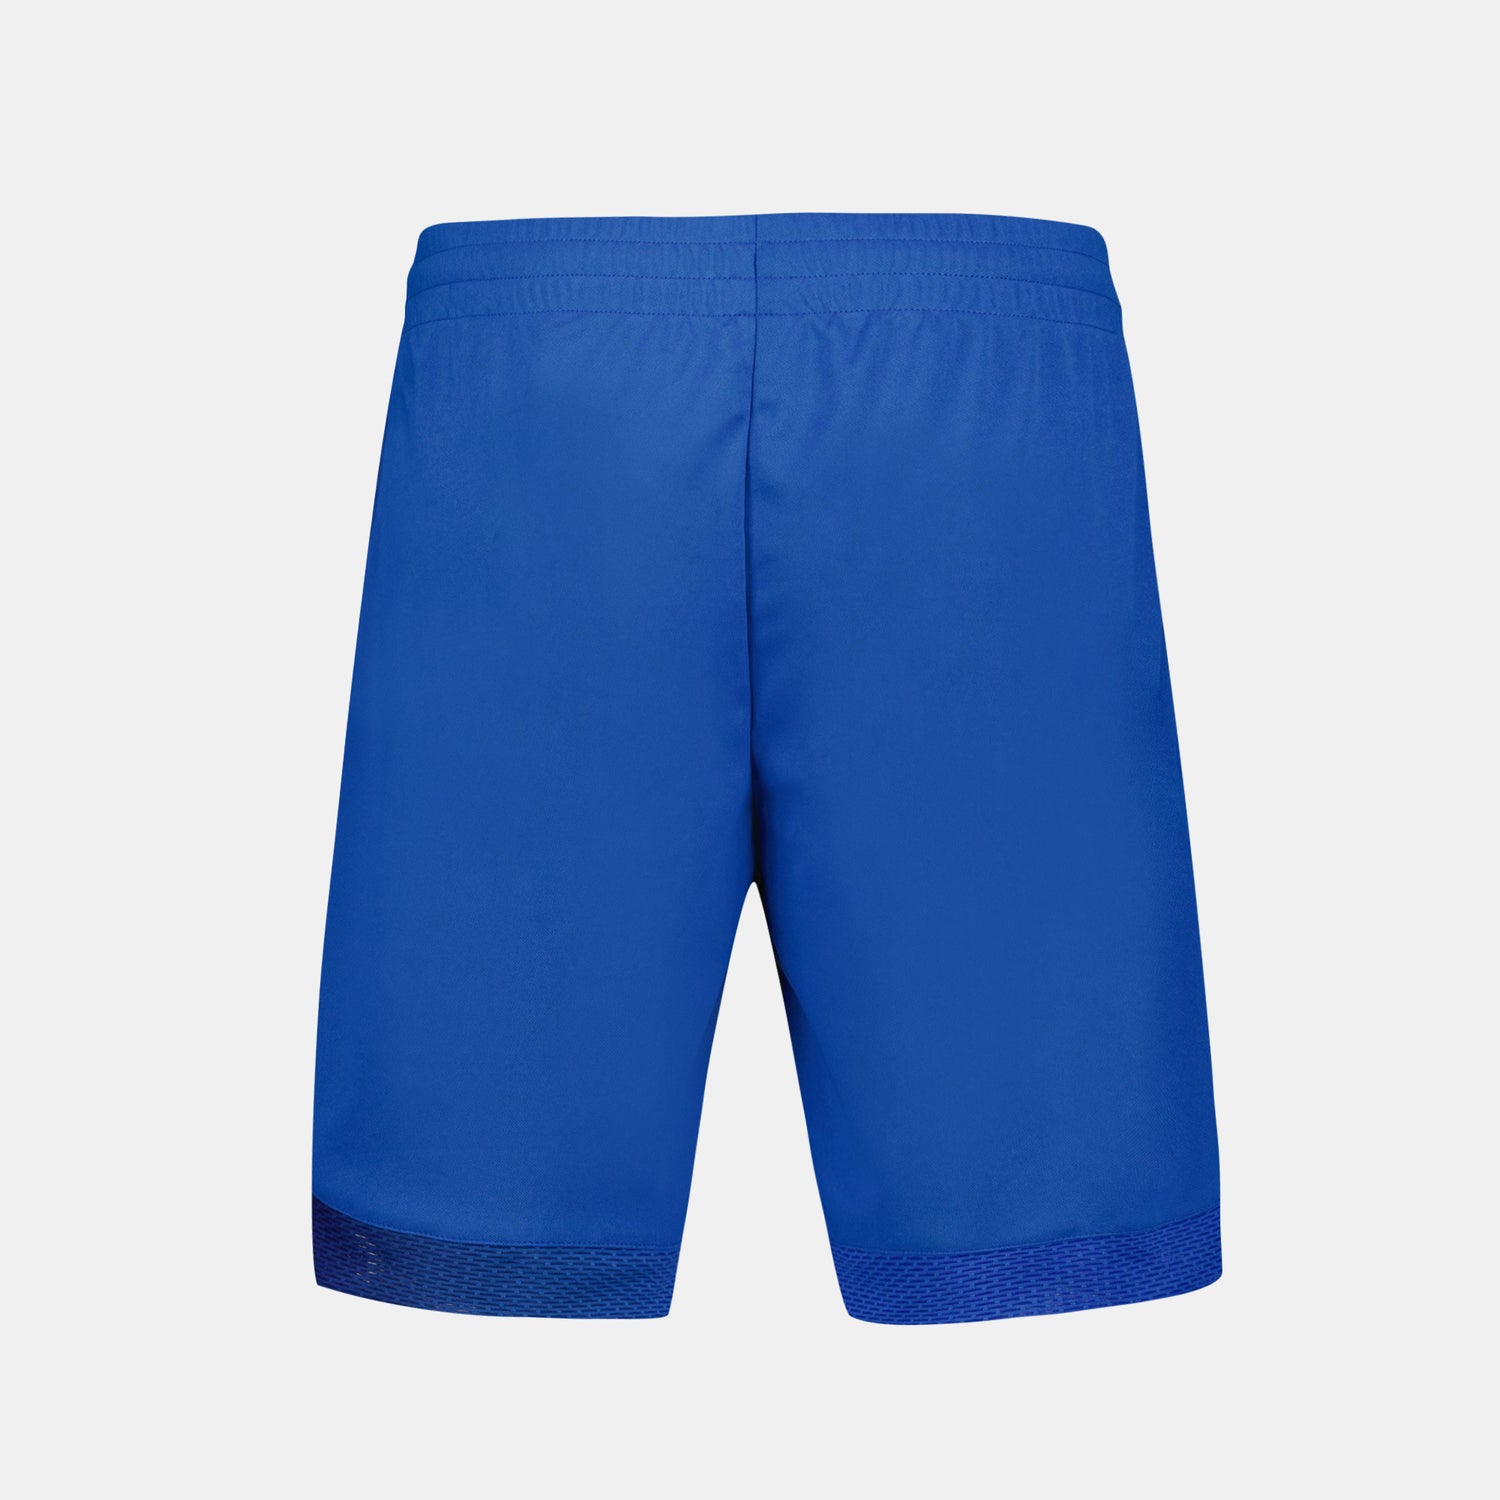 2410521-TENNIS PRO Short 24 N°1 M lapis blue | Short Homme